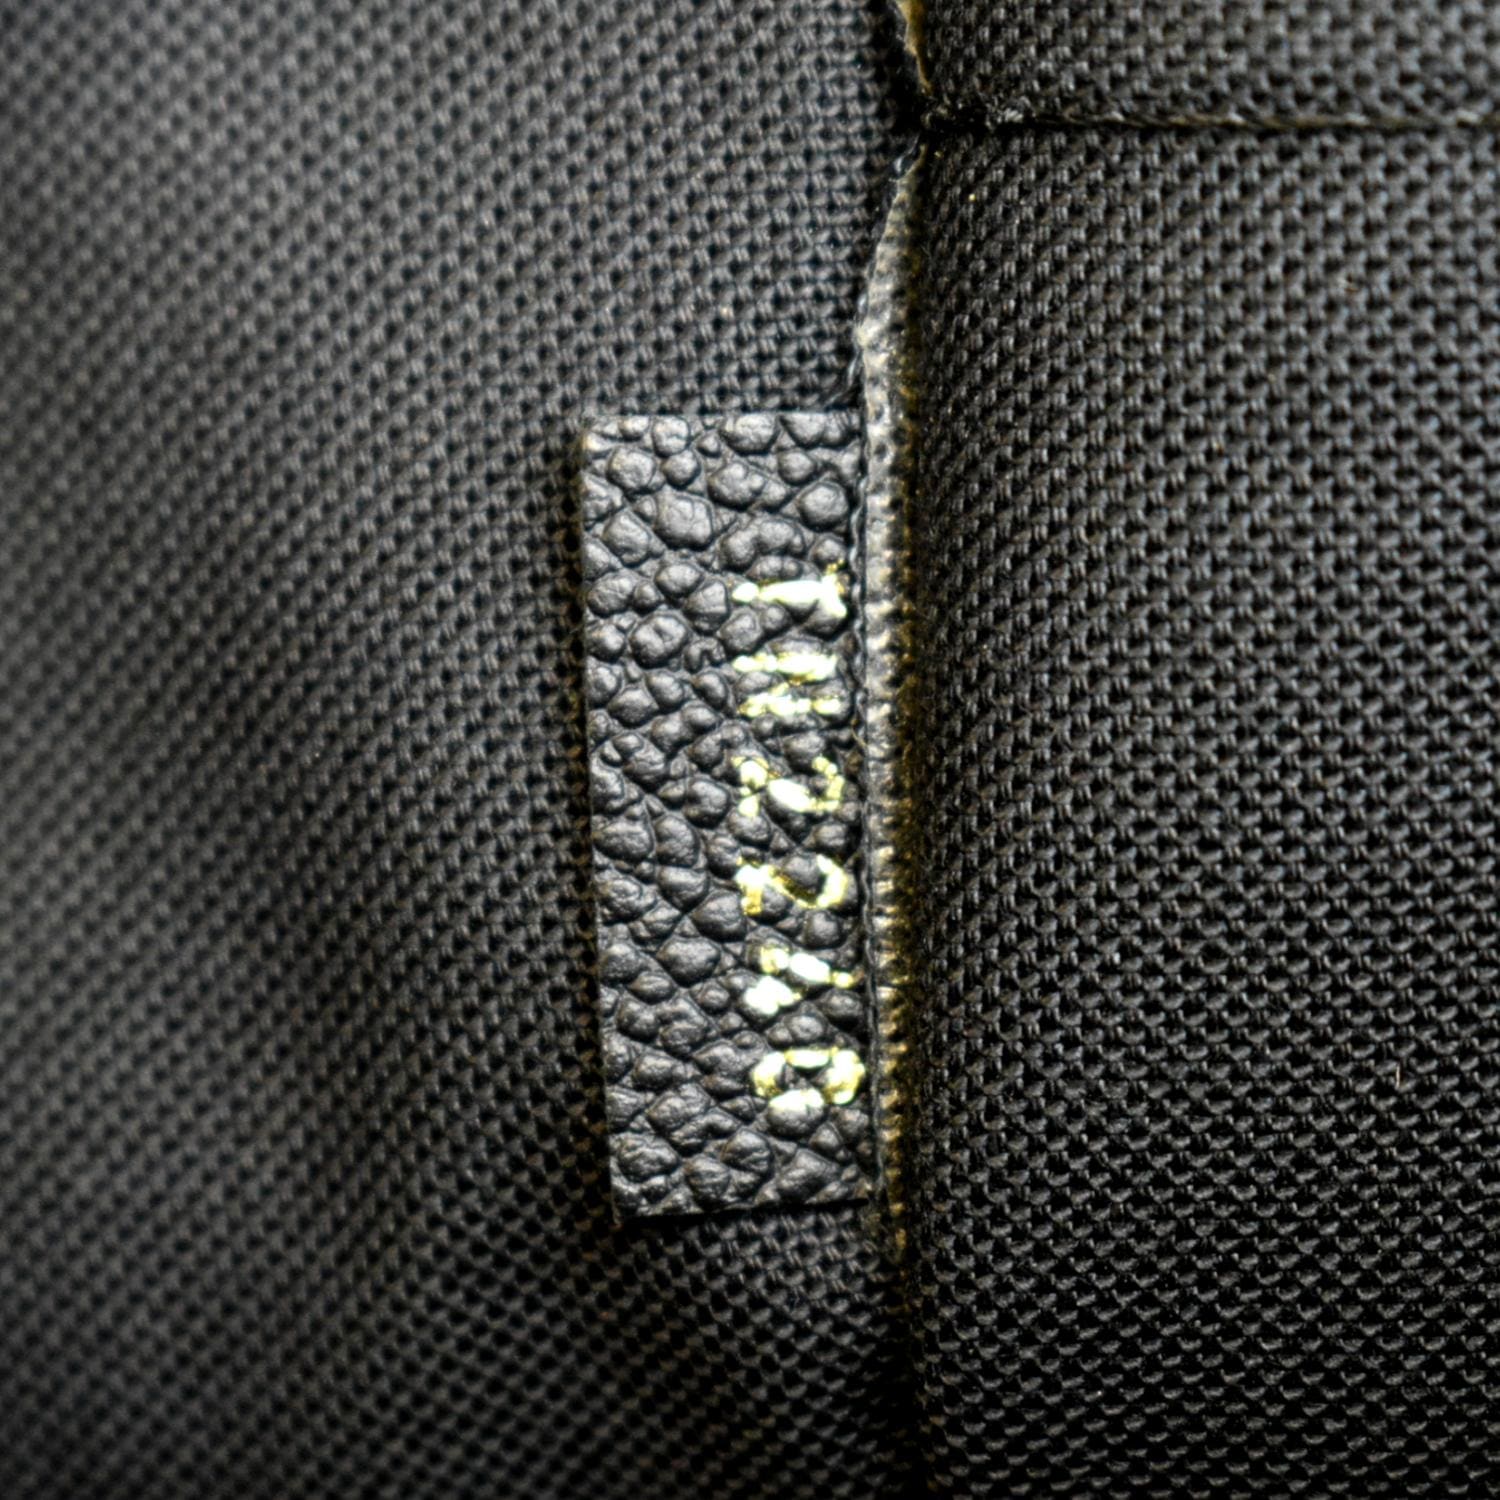 authentic Louis Vuitton Monogram Daily Pouch in Monogram / Noir black